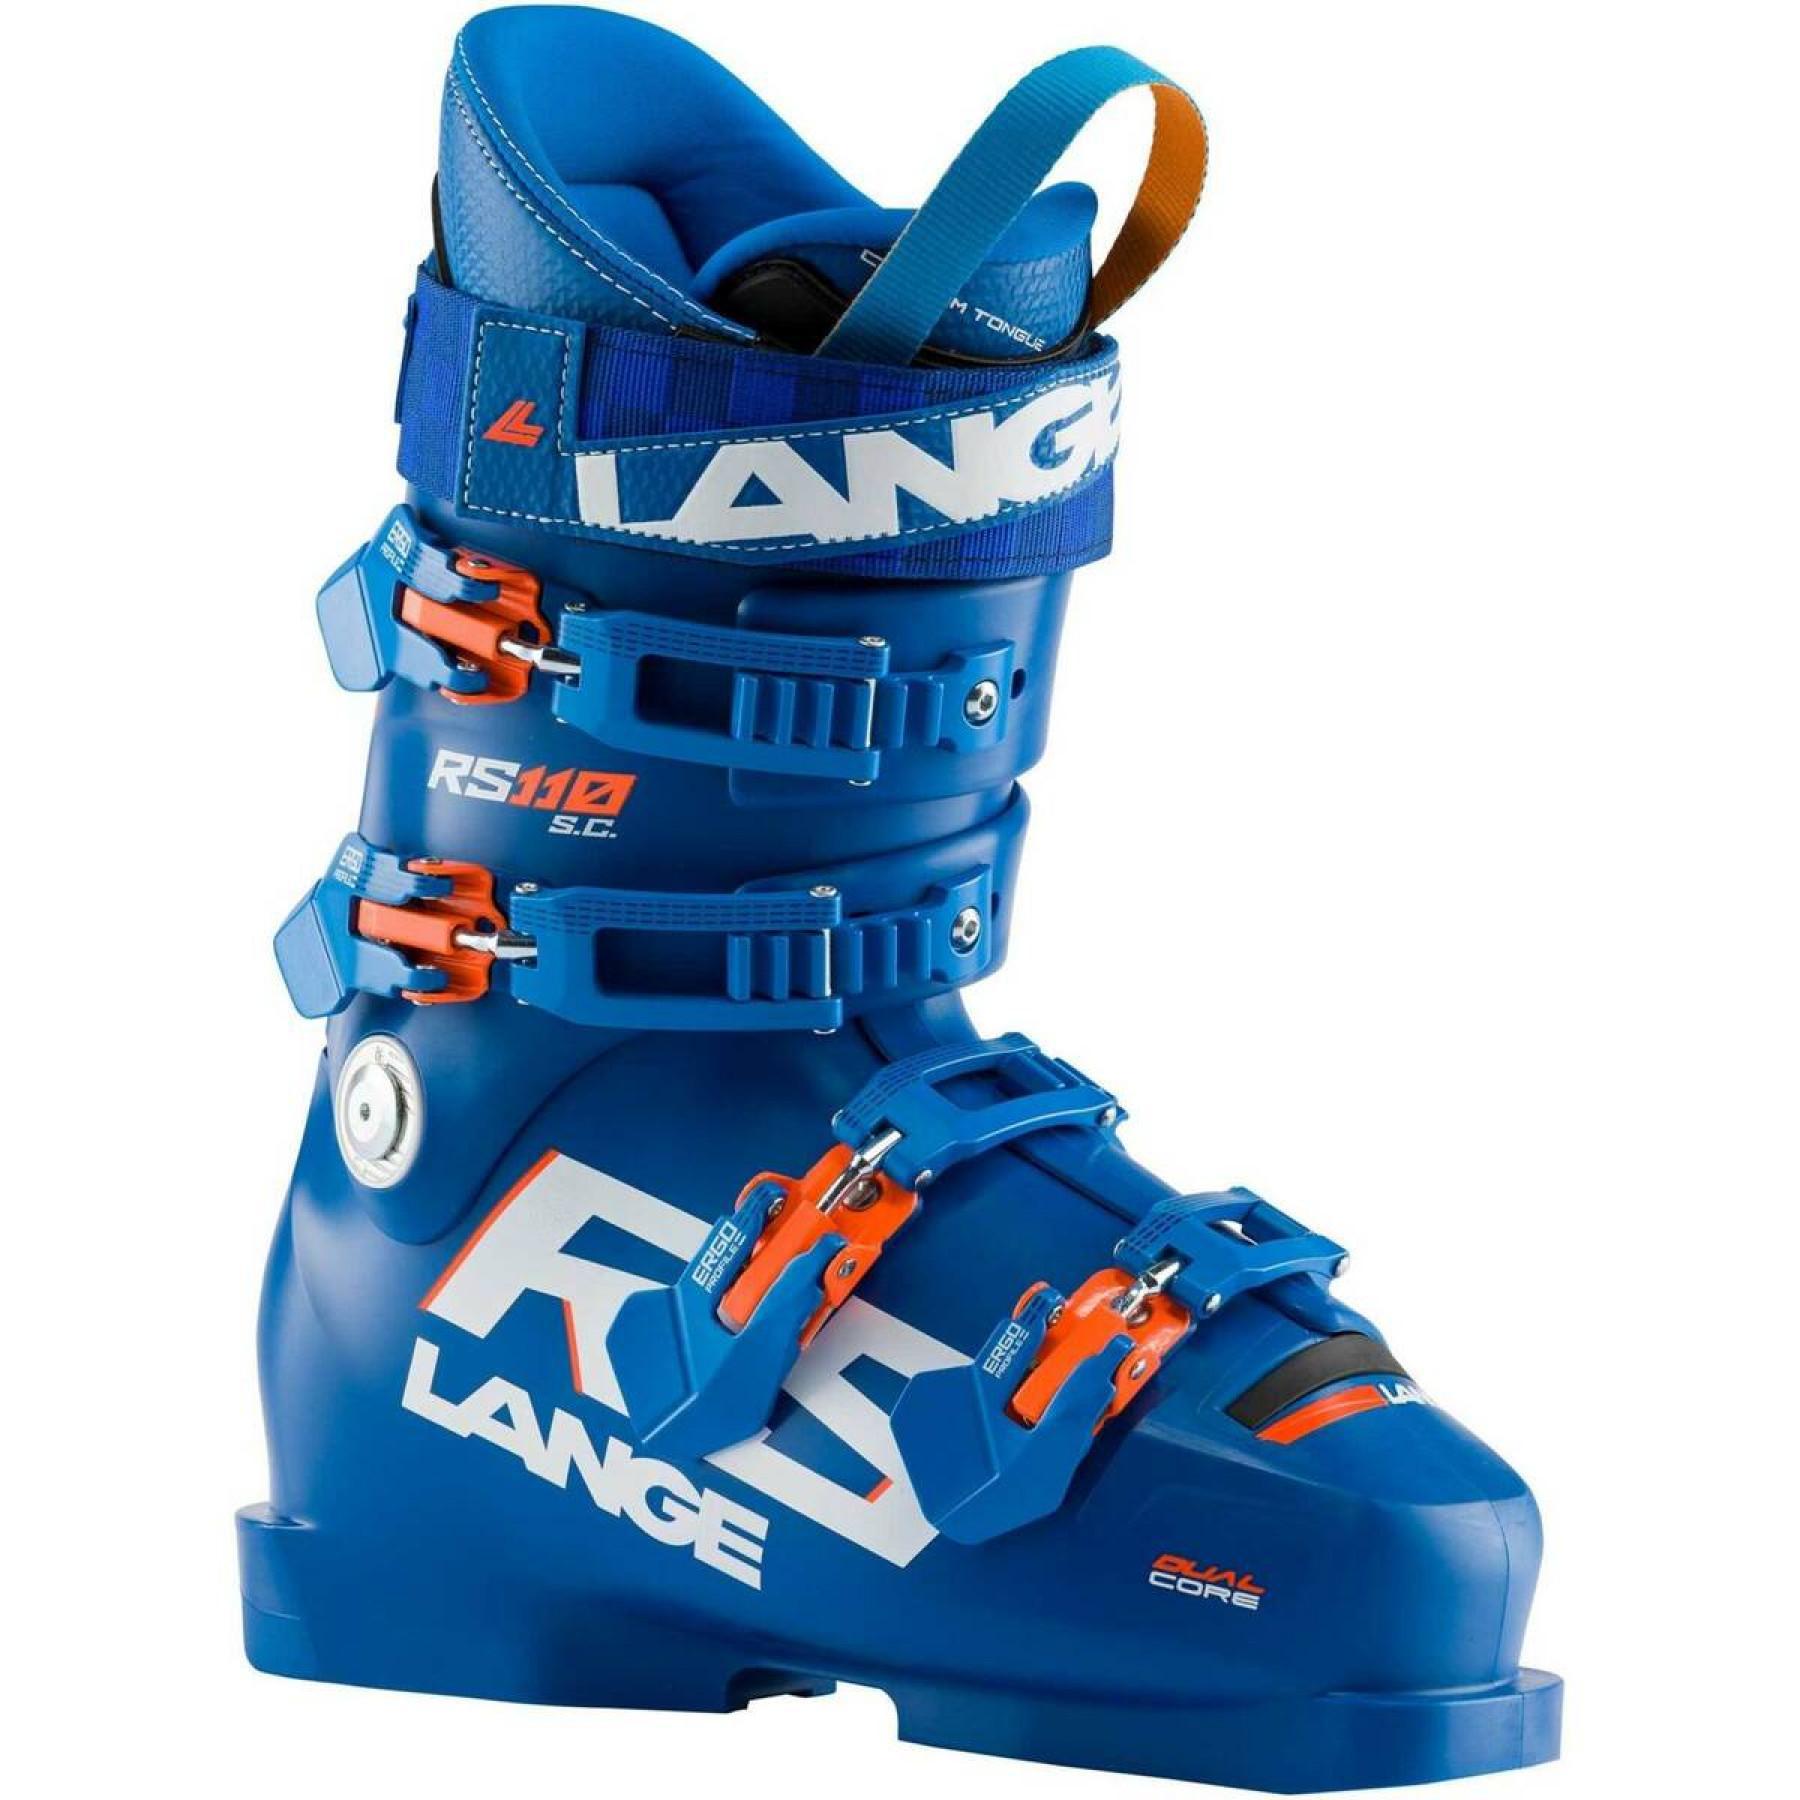 Zapatillas de esquí niños Lange rs 110 s.c.